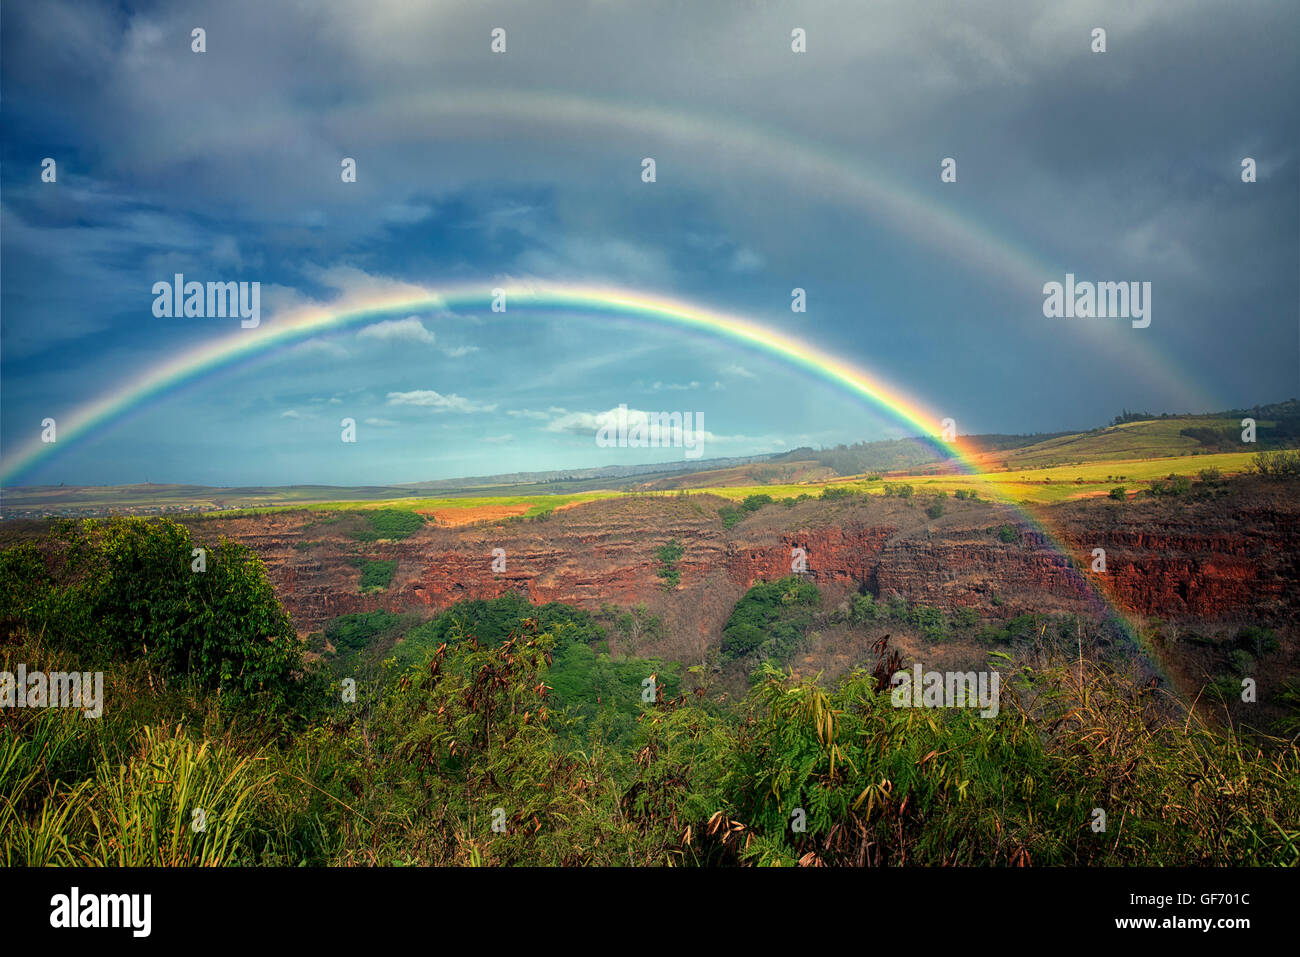 Hanapepe Valley with rainbow. Kauai, Hawaii. Stock Photo